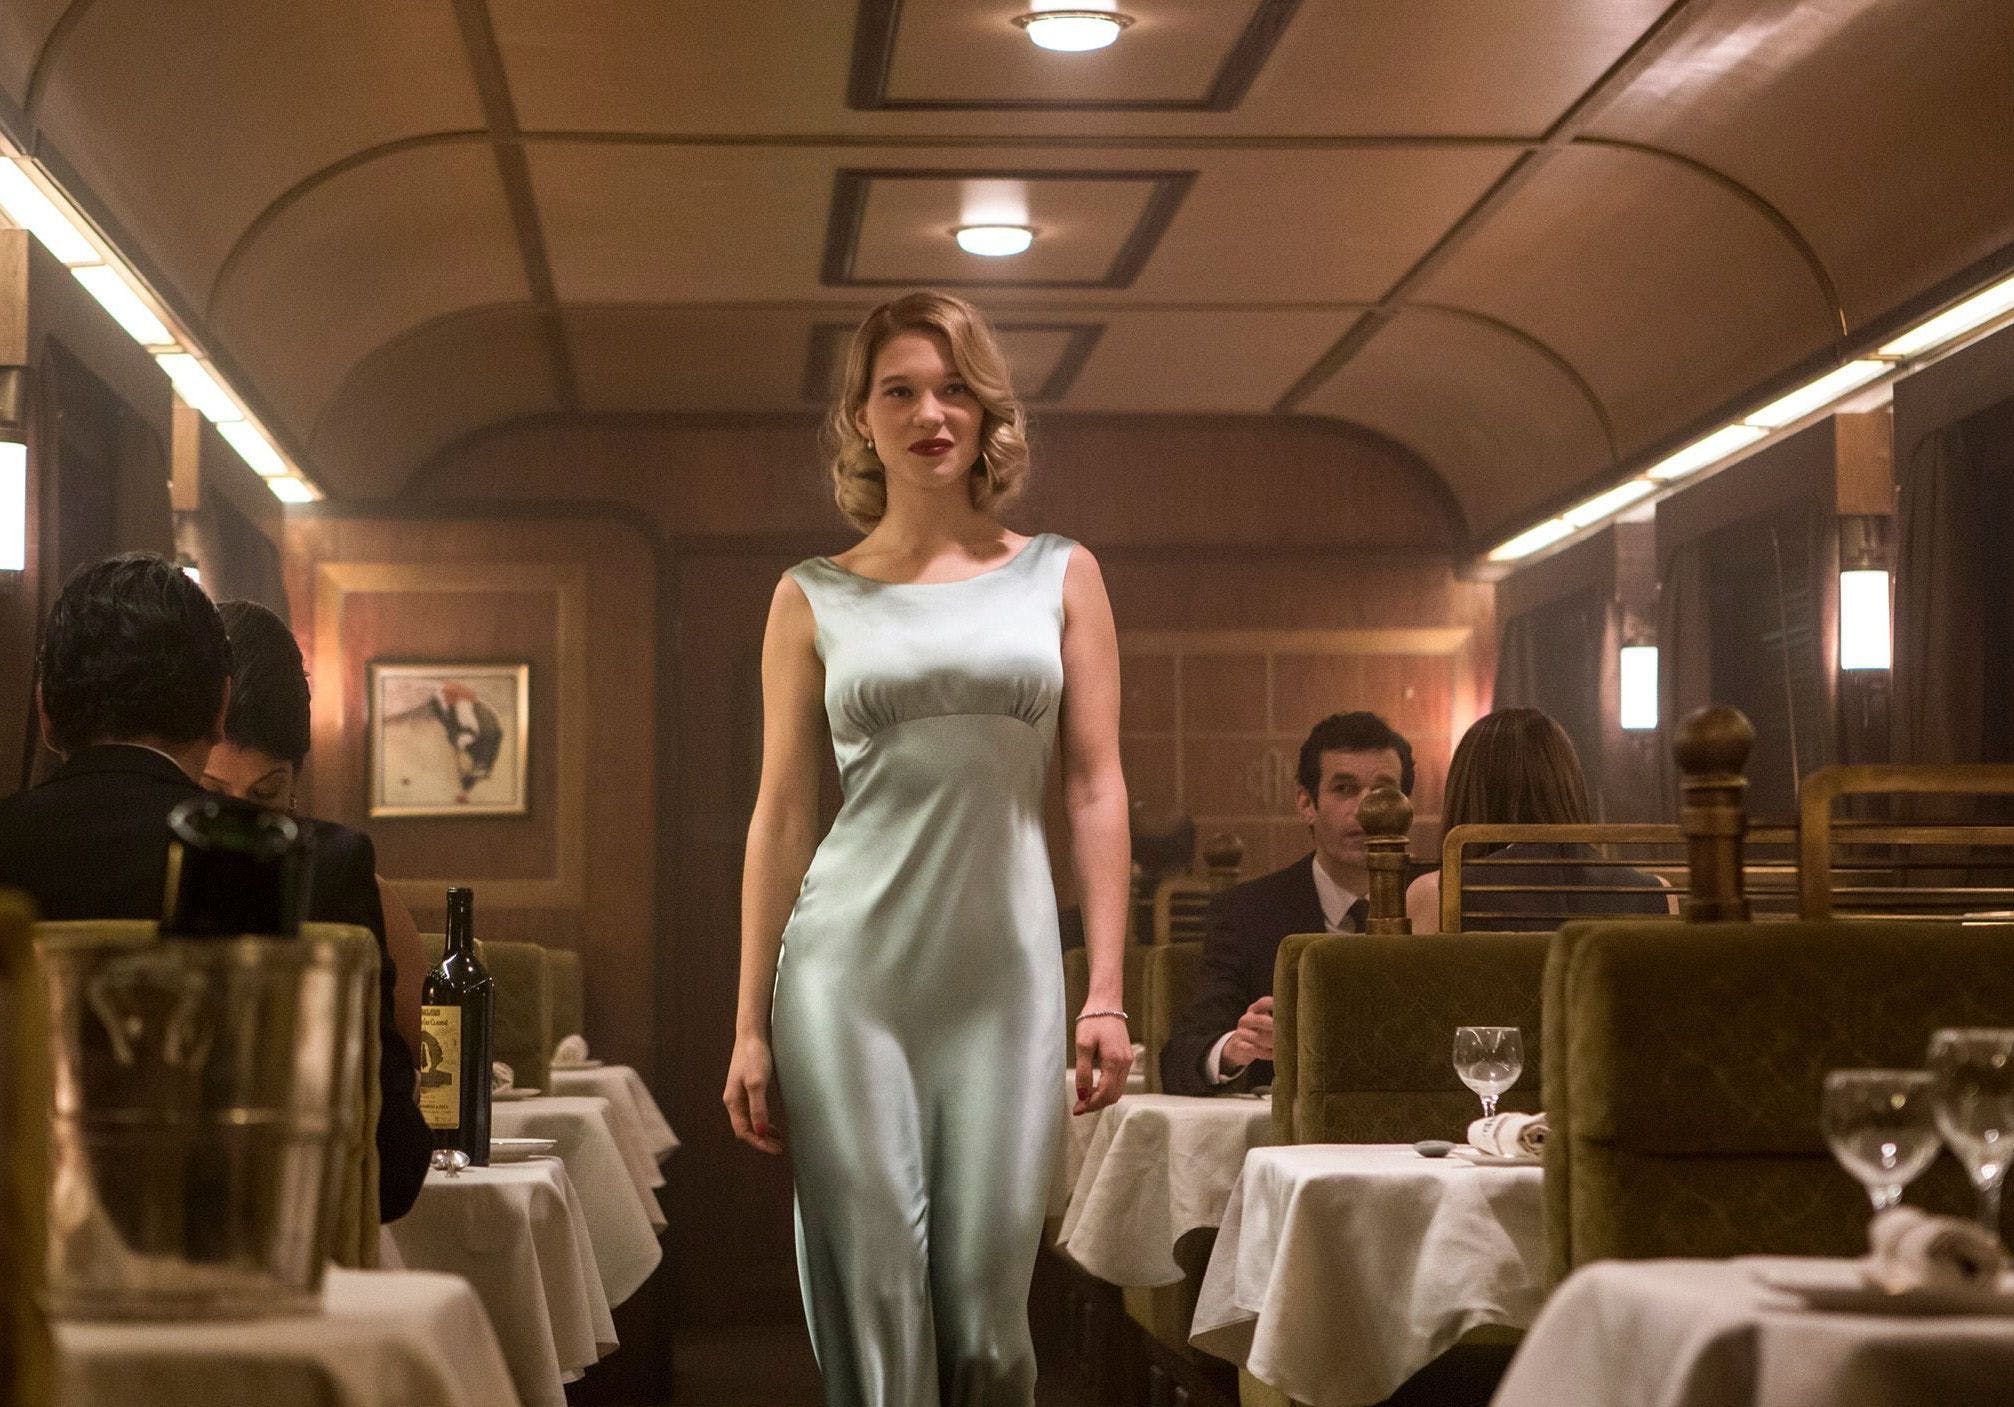 What Dress Will the Next Bond Girl, Léa Seydoux, Wear?